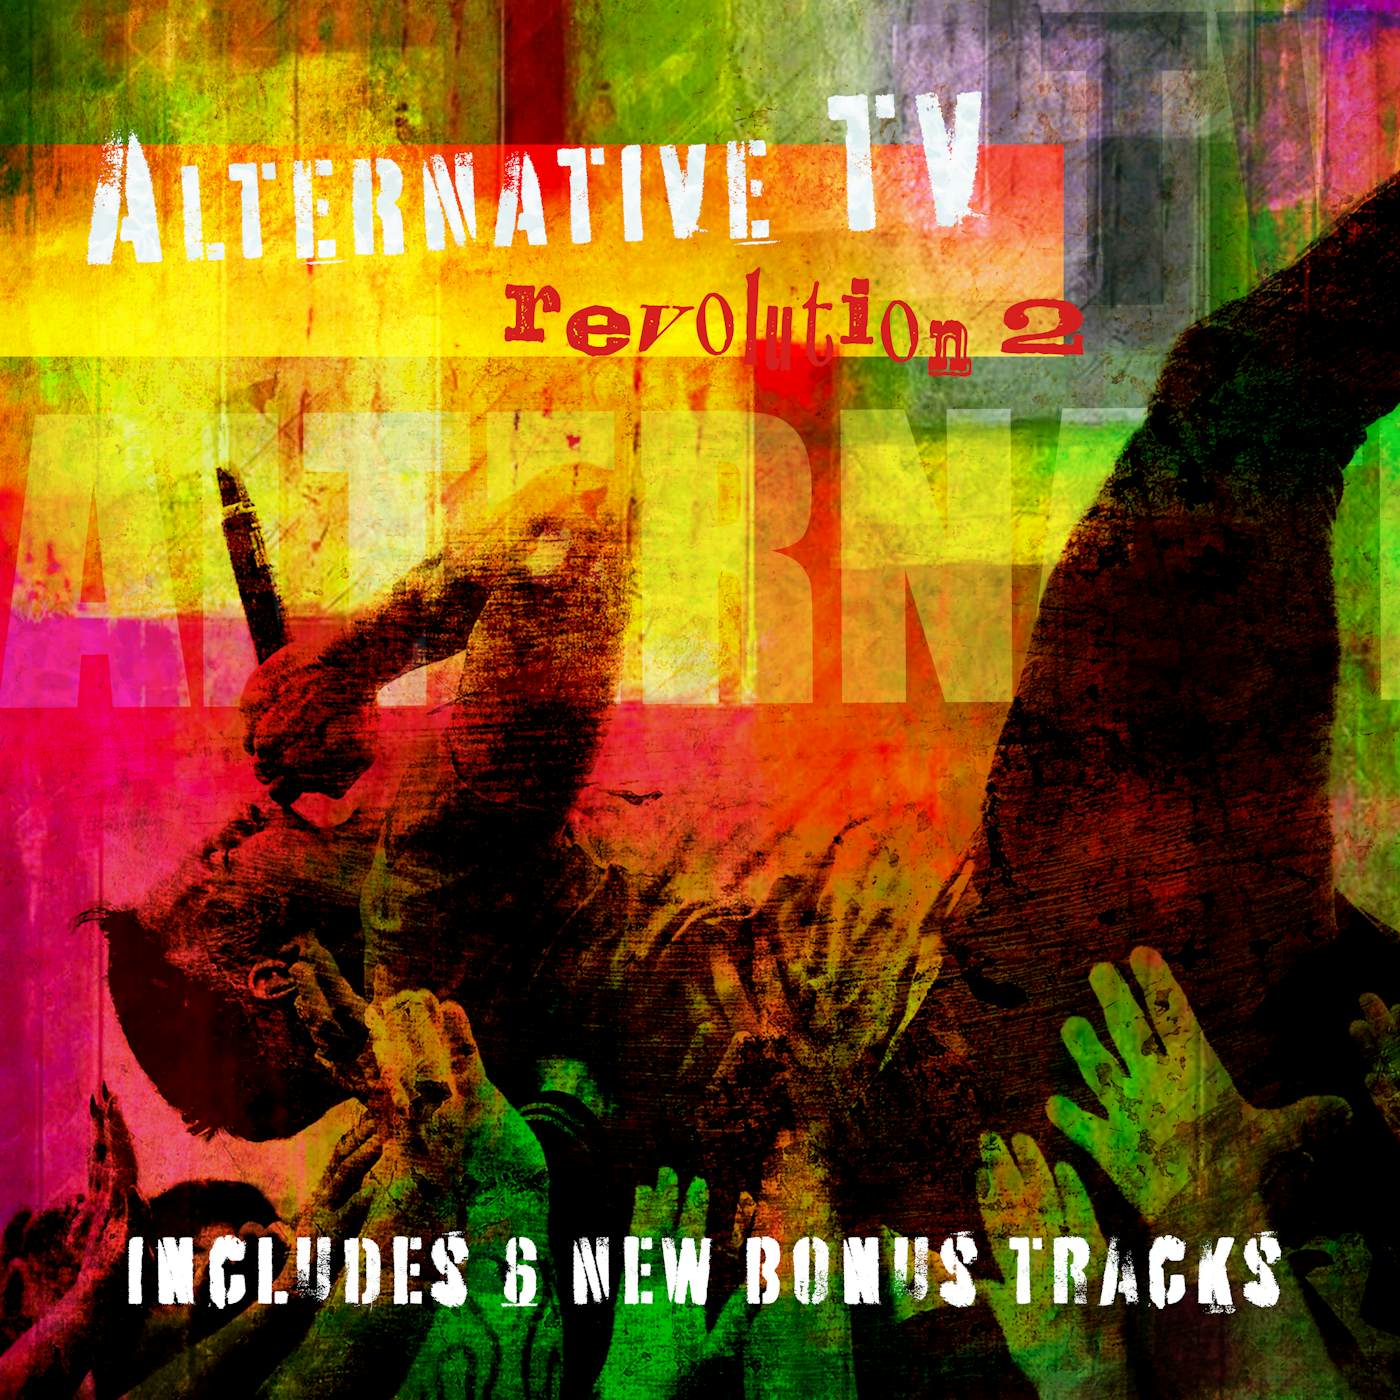 Alternative TV Revolution2 CD